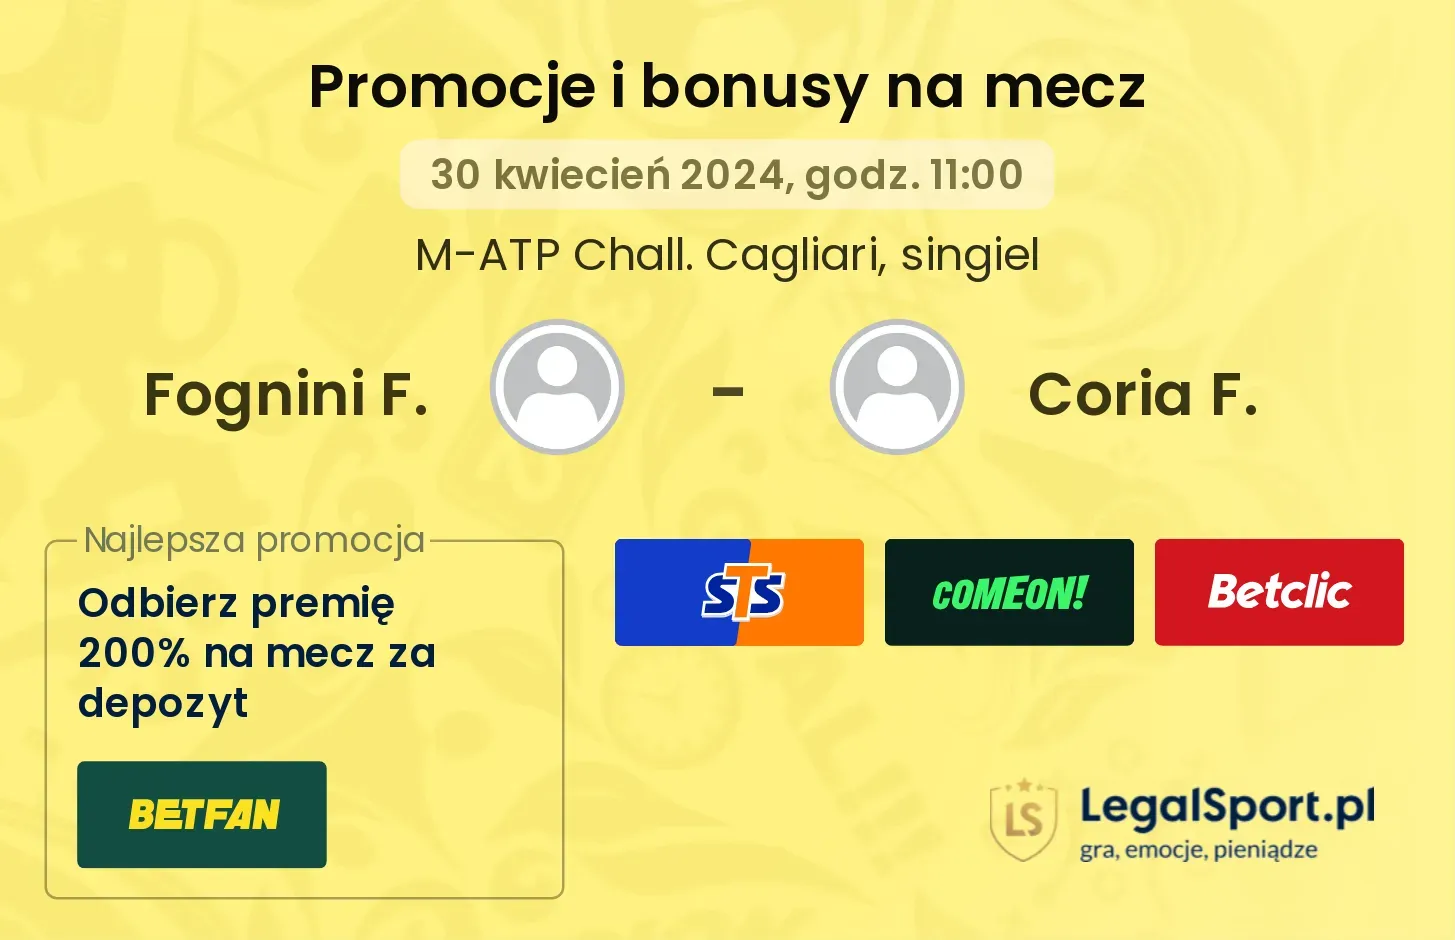 Fognini F. - Coria F. promocje bonusy na mecz